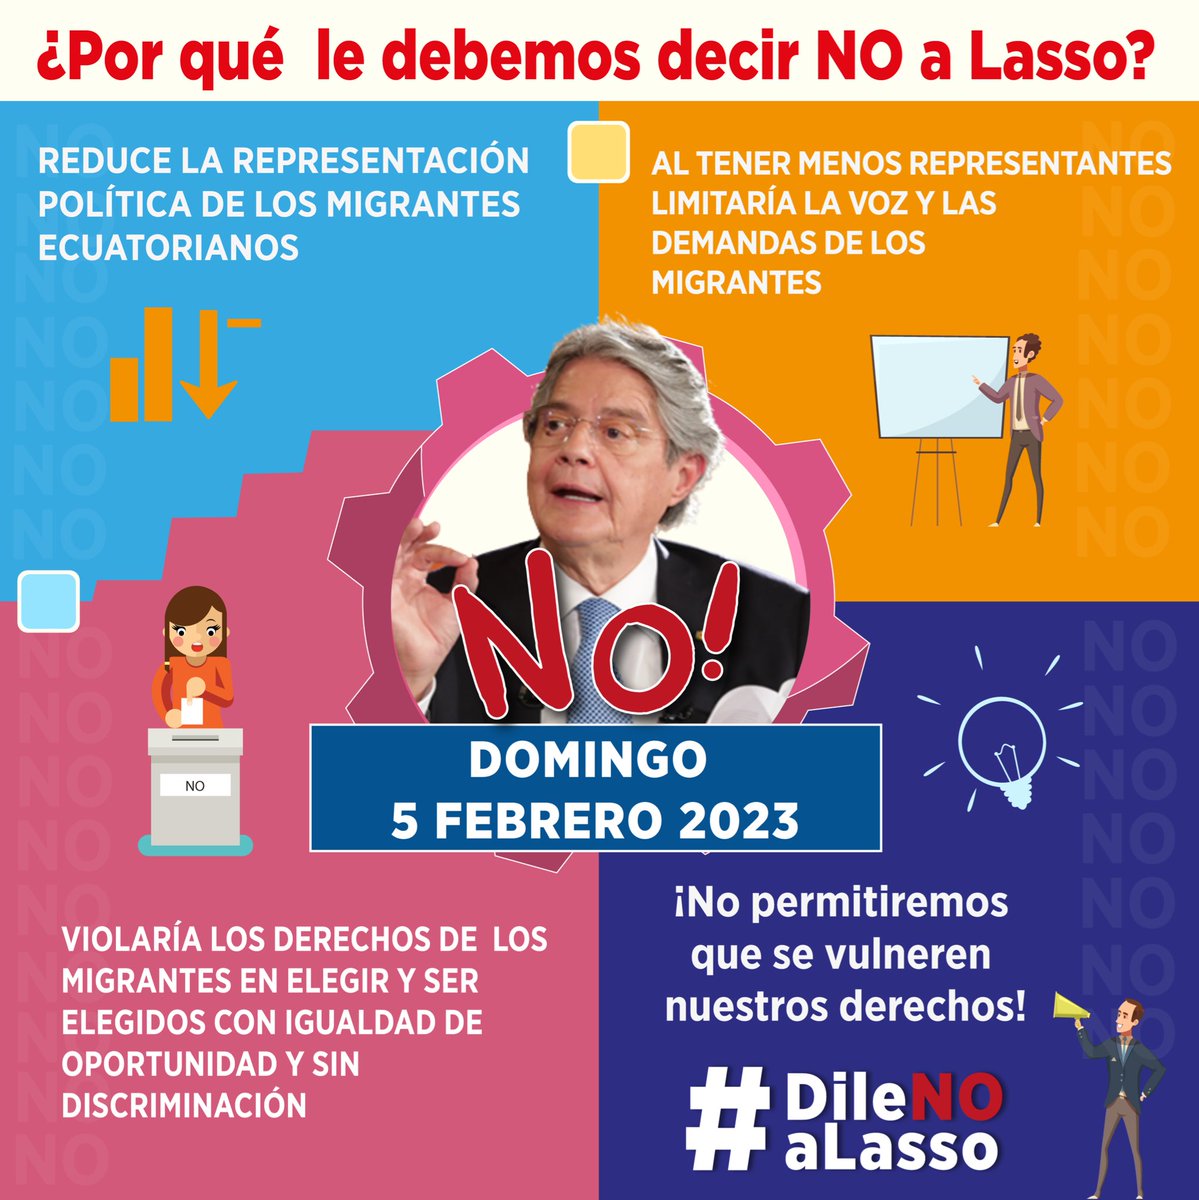 #Lasso quiere reducir los curules de los ecuatorianos en el exterior en la @AsambleaEcuador para SOCAPAR la INEPTITUD, la ineficiencia de los servicios consulares. #DileNoALasso